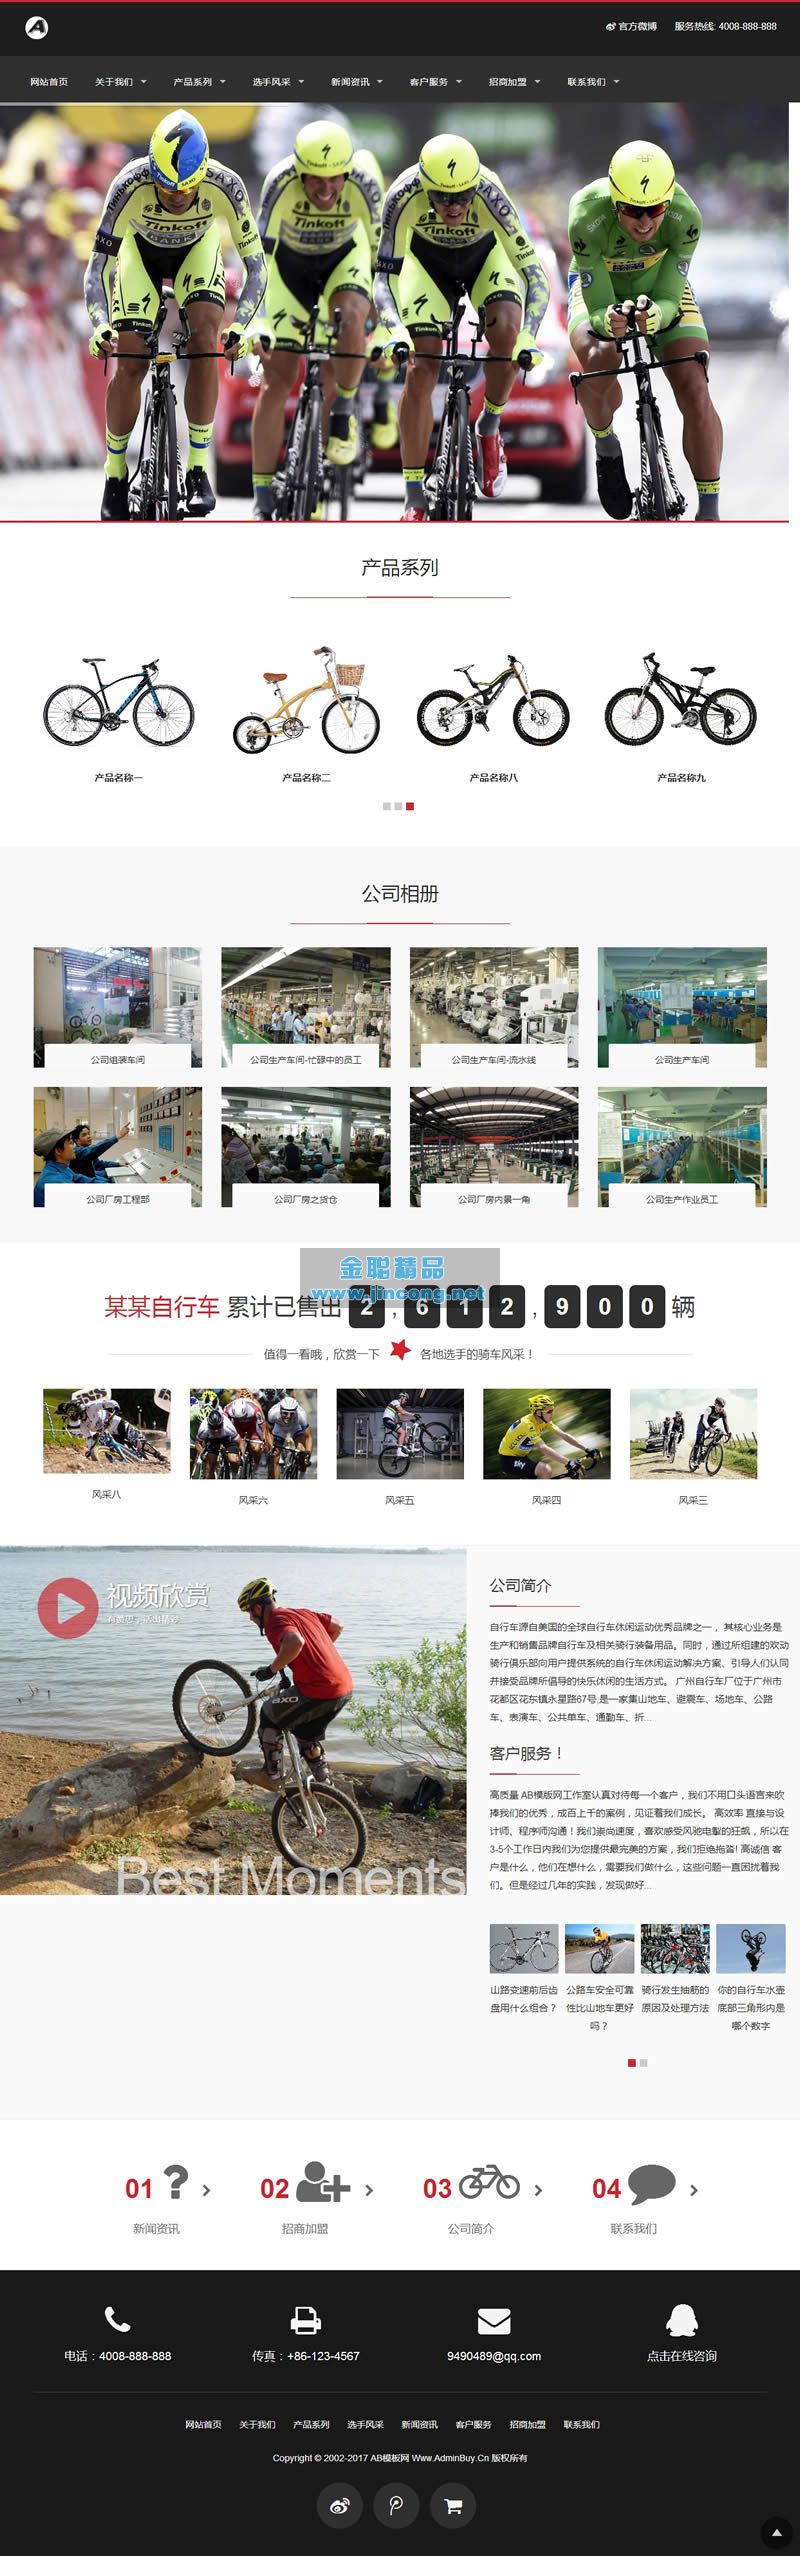 响应式休闲运动品牌自行车类网站源码 HTML5自行车生产销售网站织梦模板